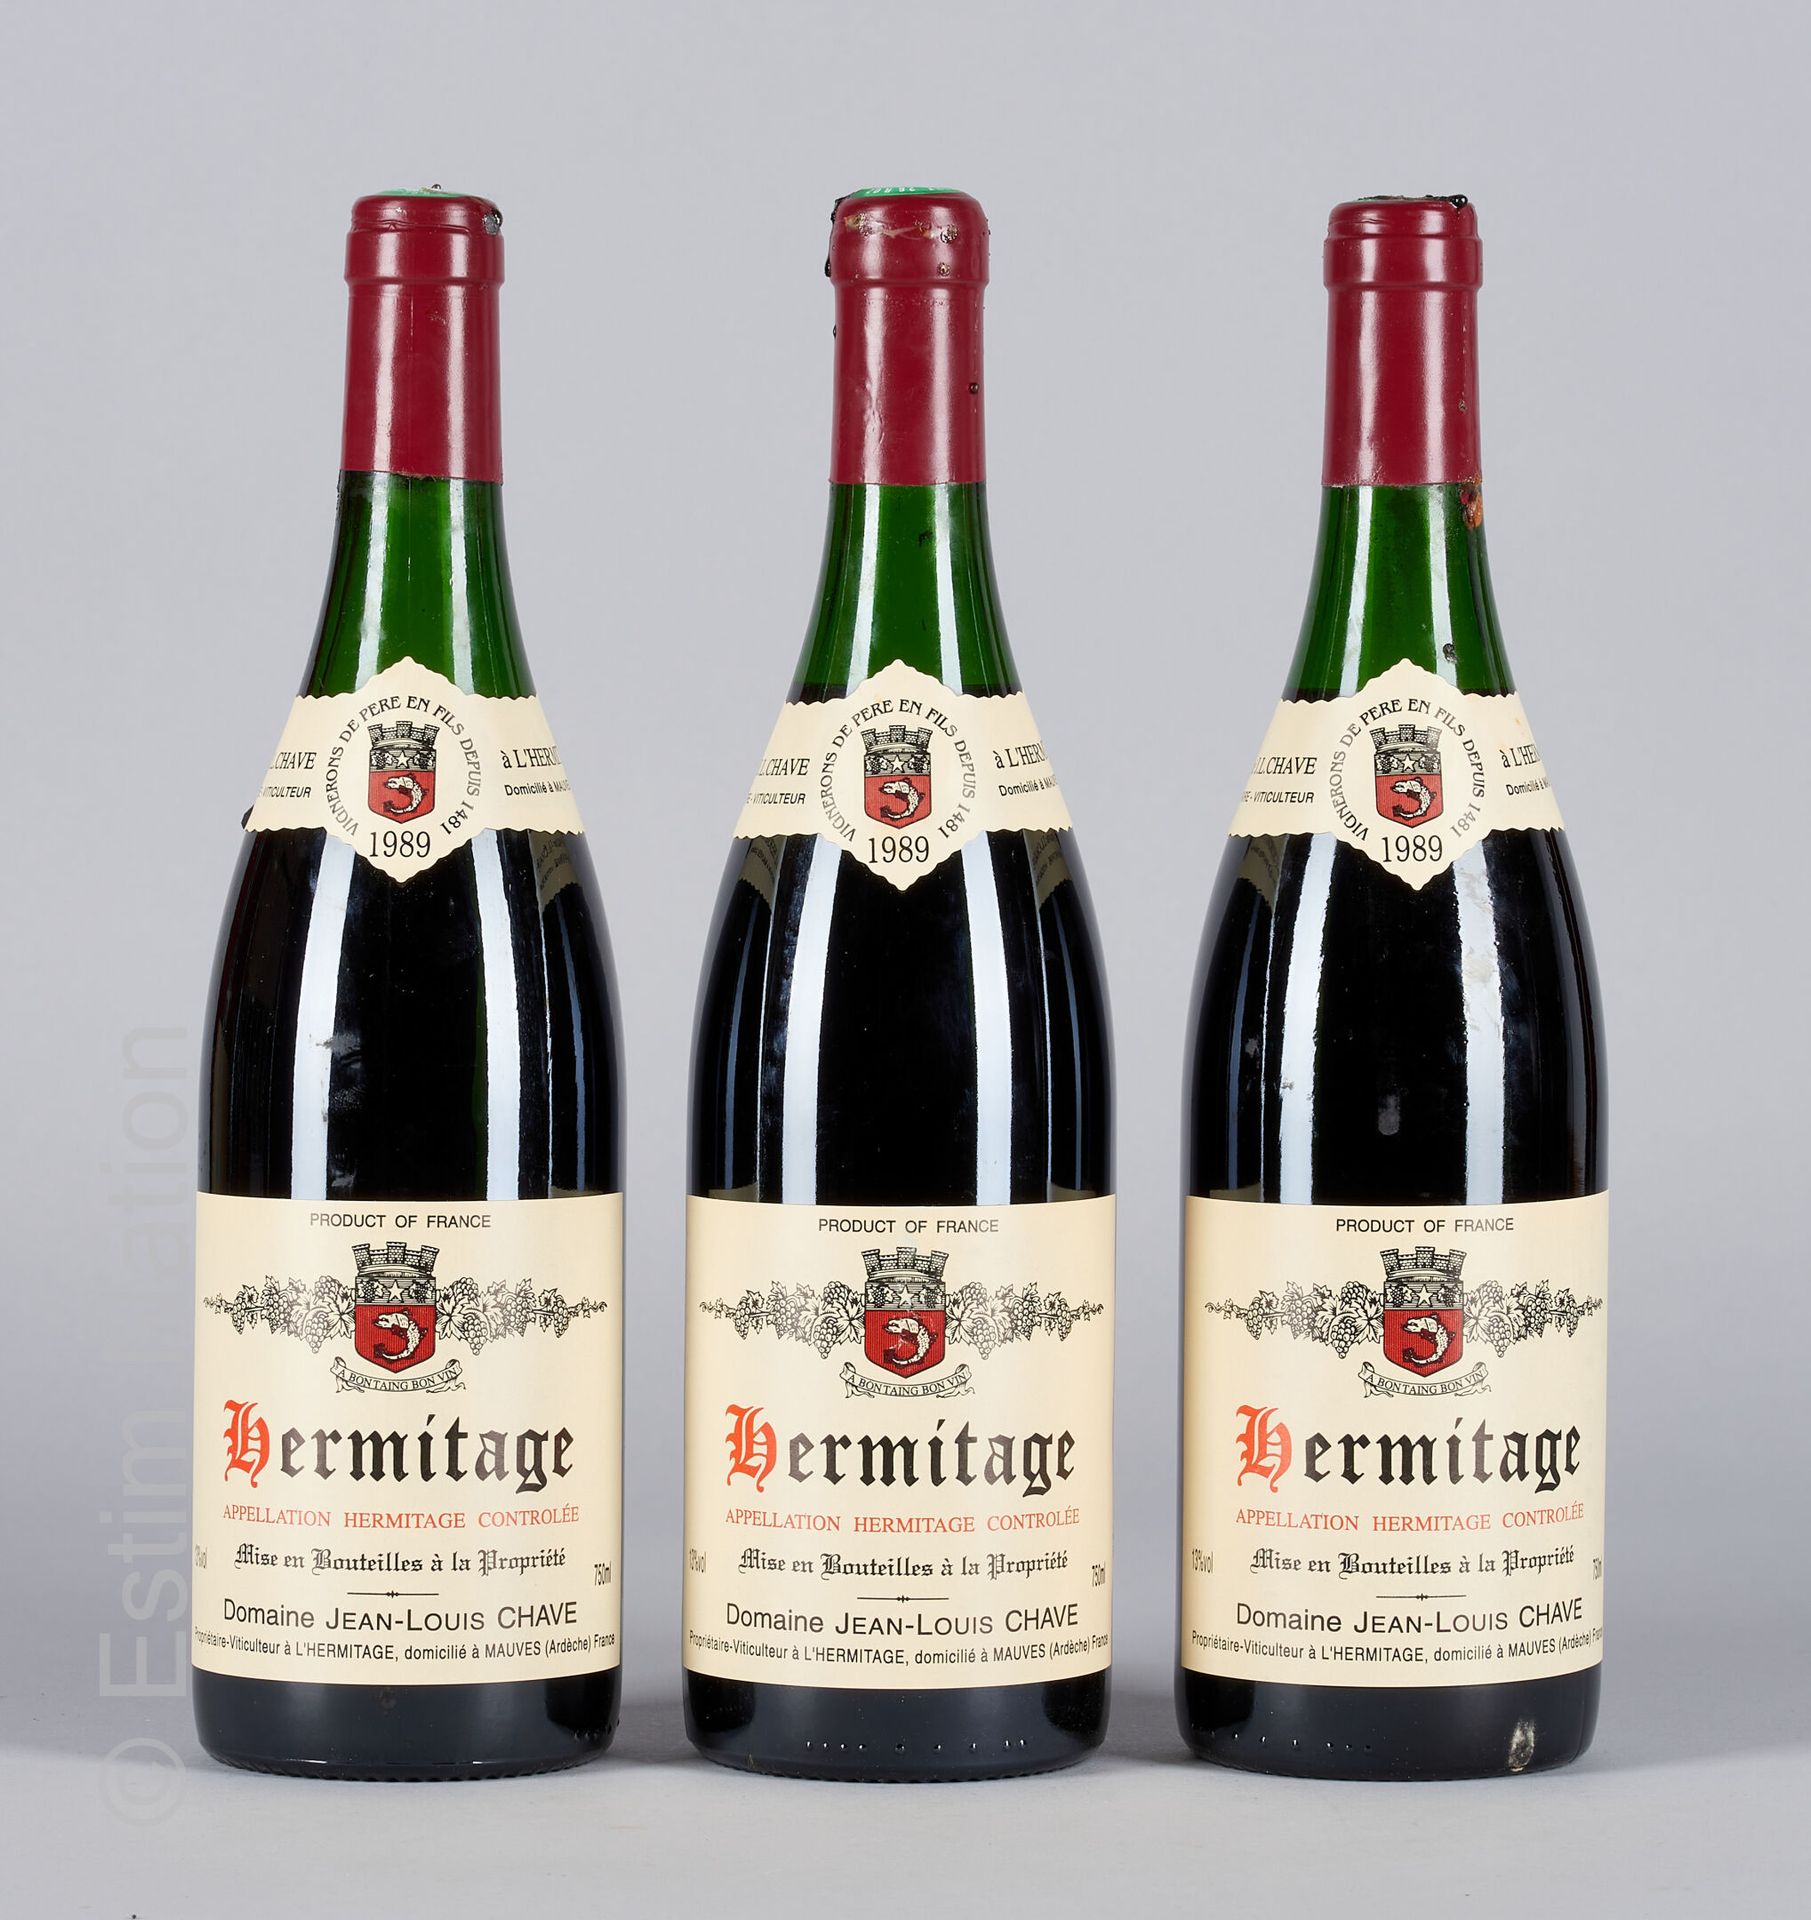 HERMITAGE ROUGE 3 bottles HERMITAGE 1989 Jean-Louis Chave

(N. Between 4 and 4.5&hellip;